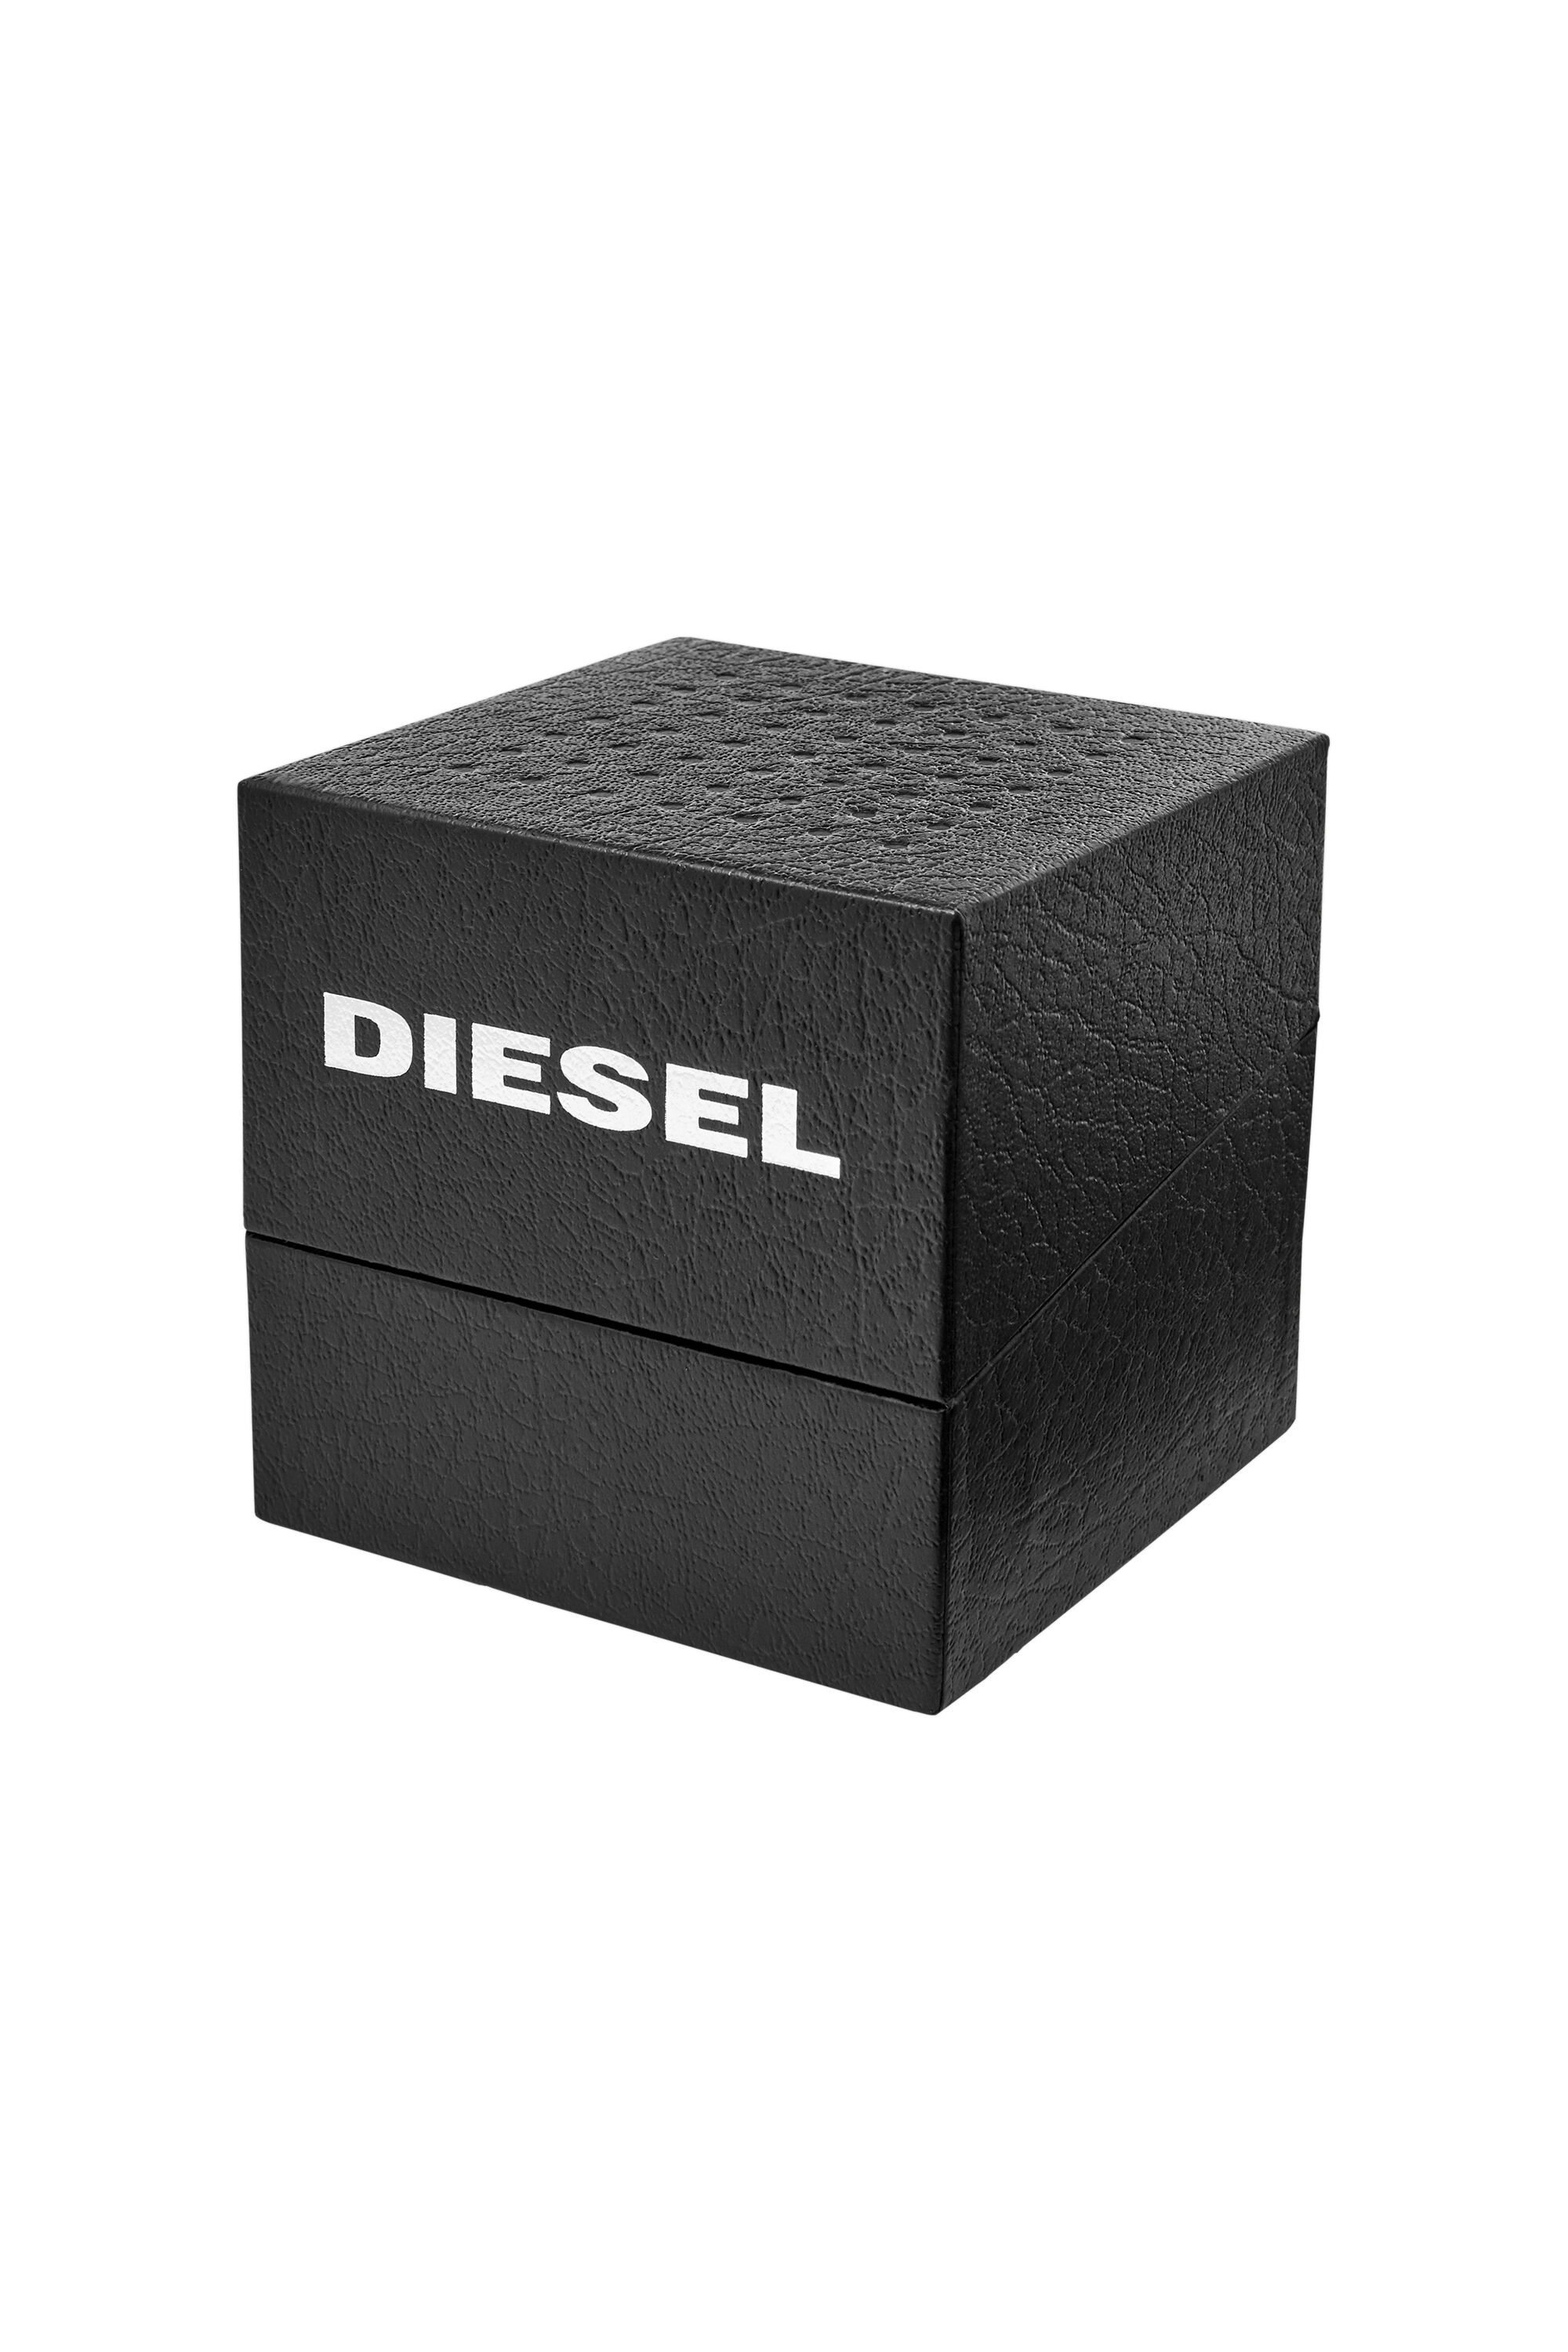 Diesel - DZ1907, Nero - Image 5